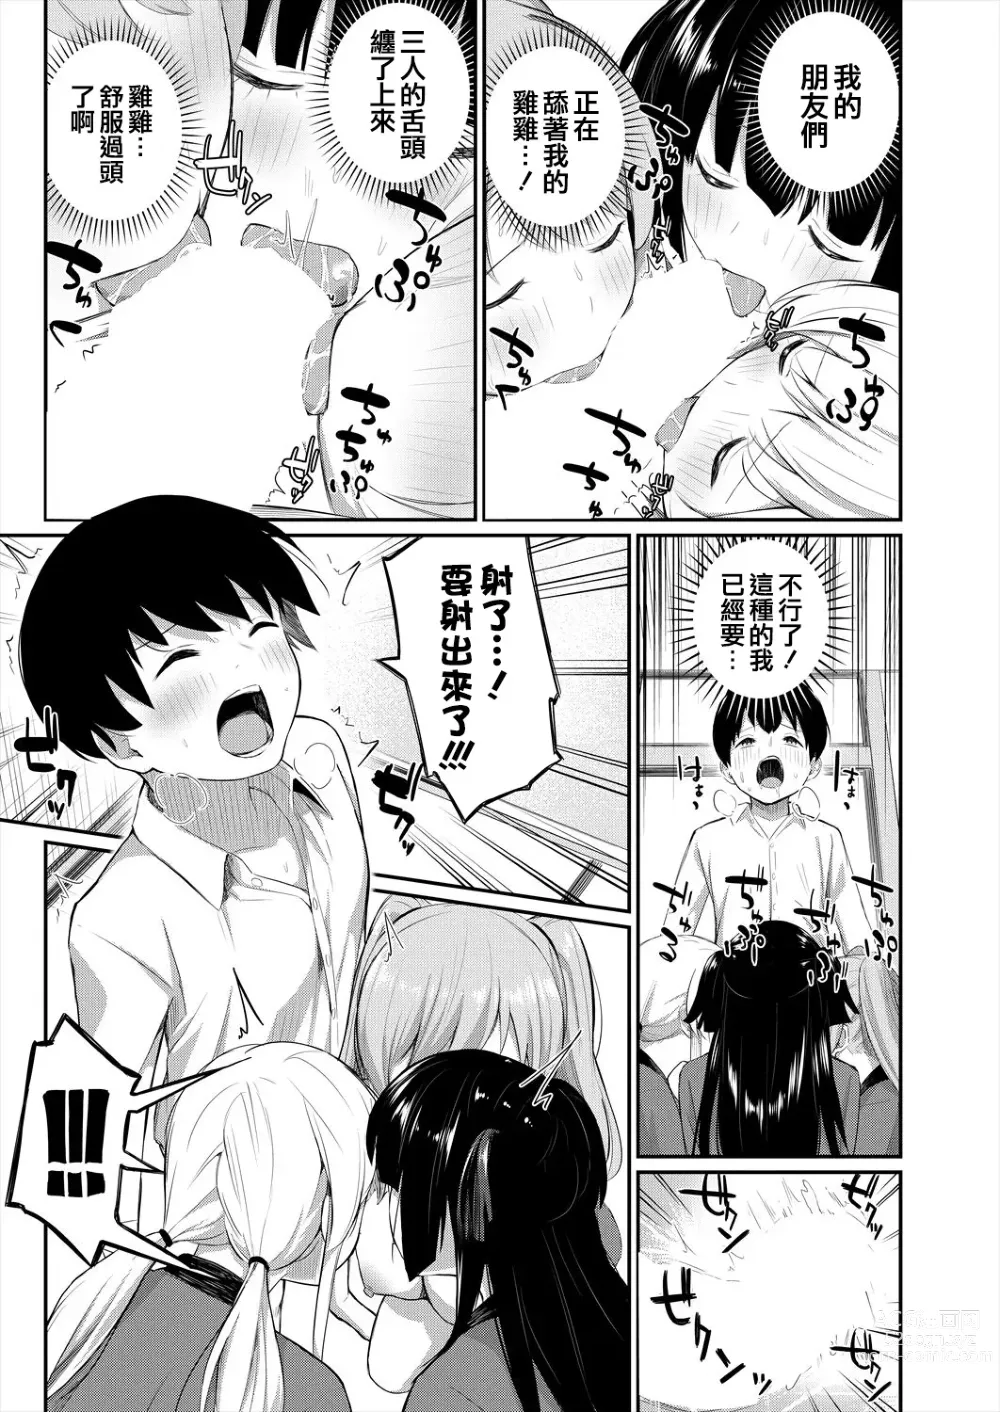 Page 10 of manga Onnanoko Bakari no Gojiseinanode Boku ga Tanetsuke suru koto ni narimashita.